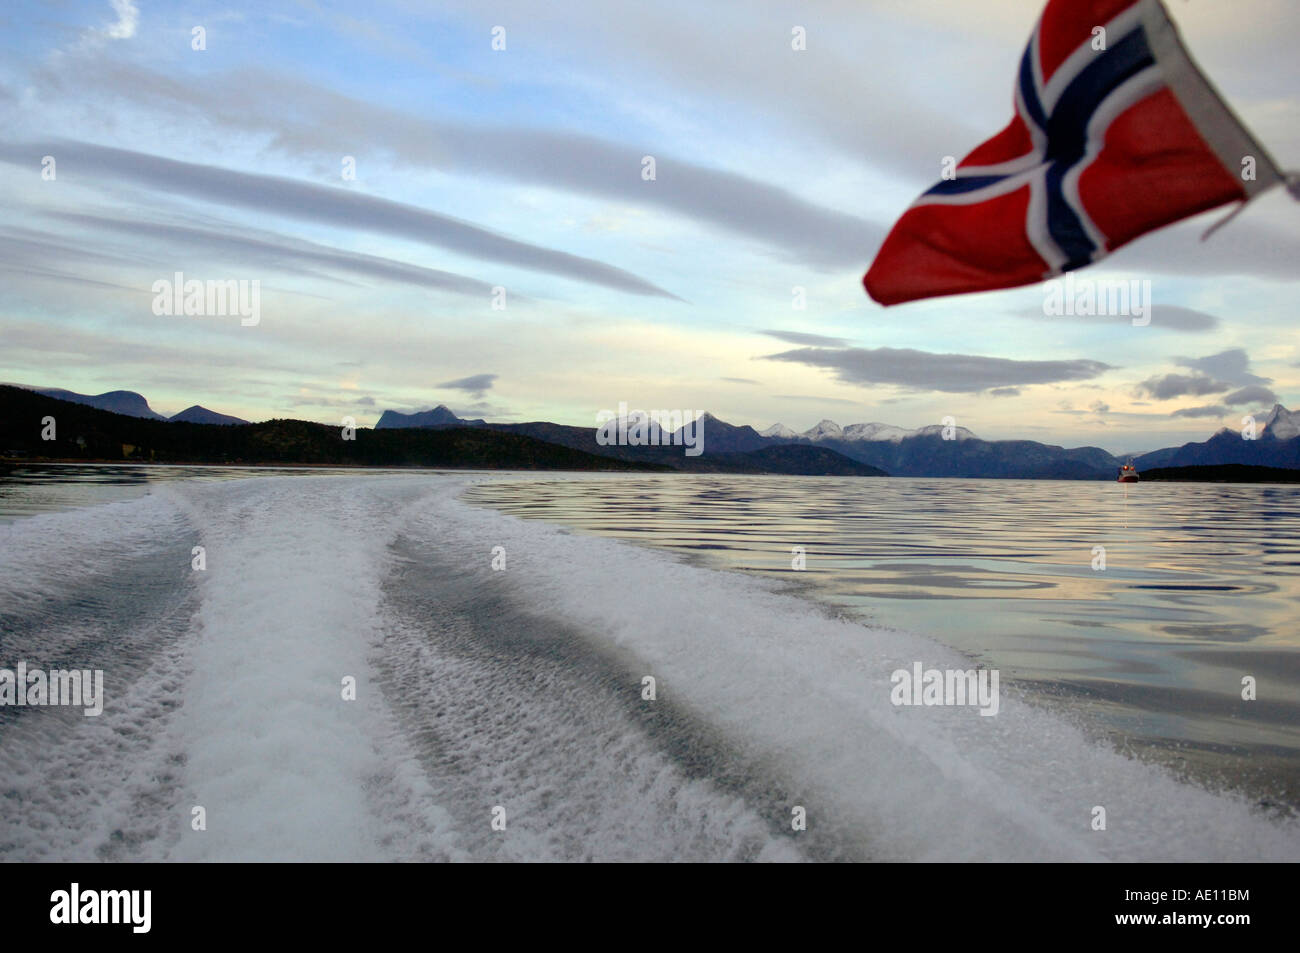 La bandera nacional de Noruega en la popa de una lancha, Tysfjord, Noruega Foto de stock